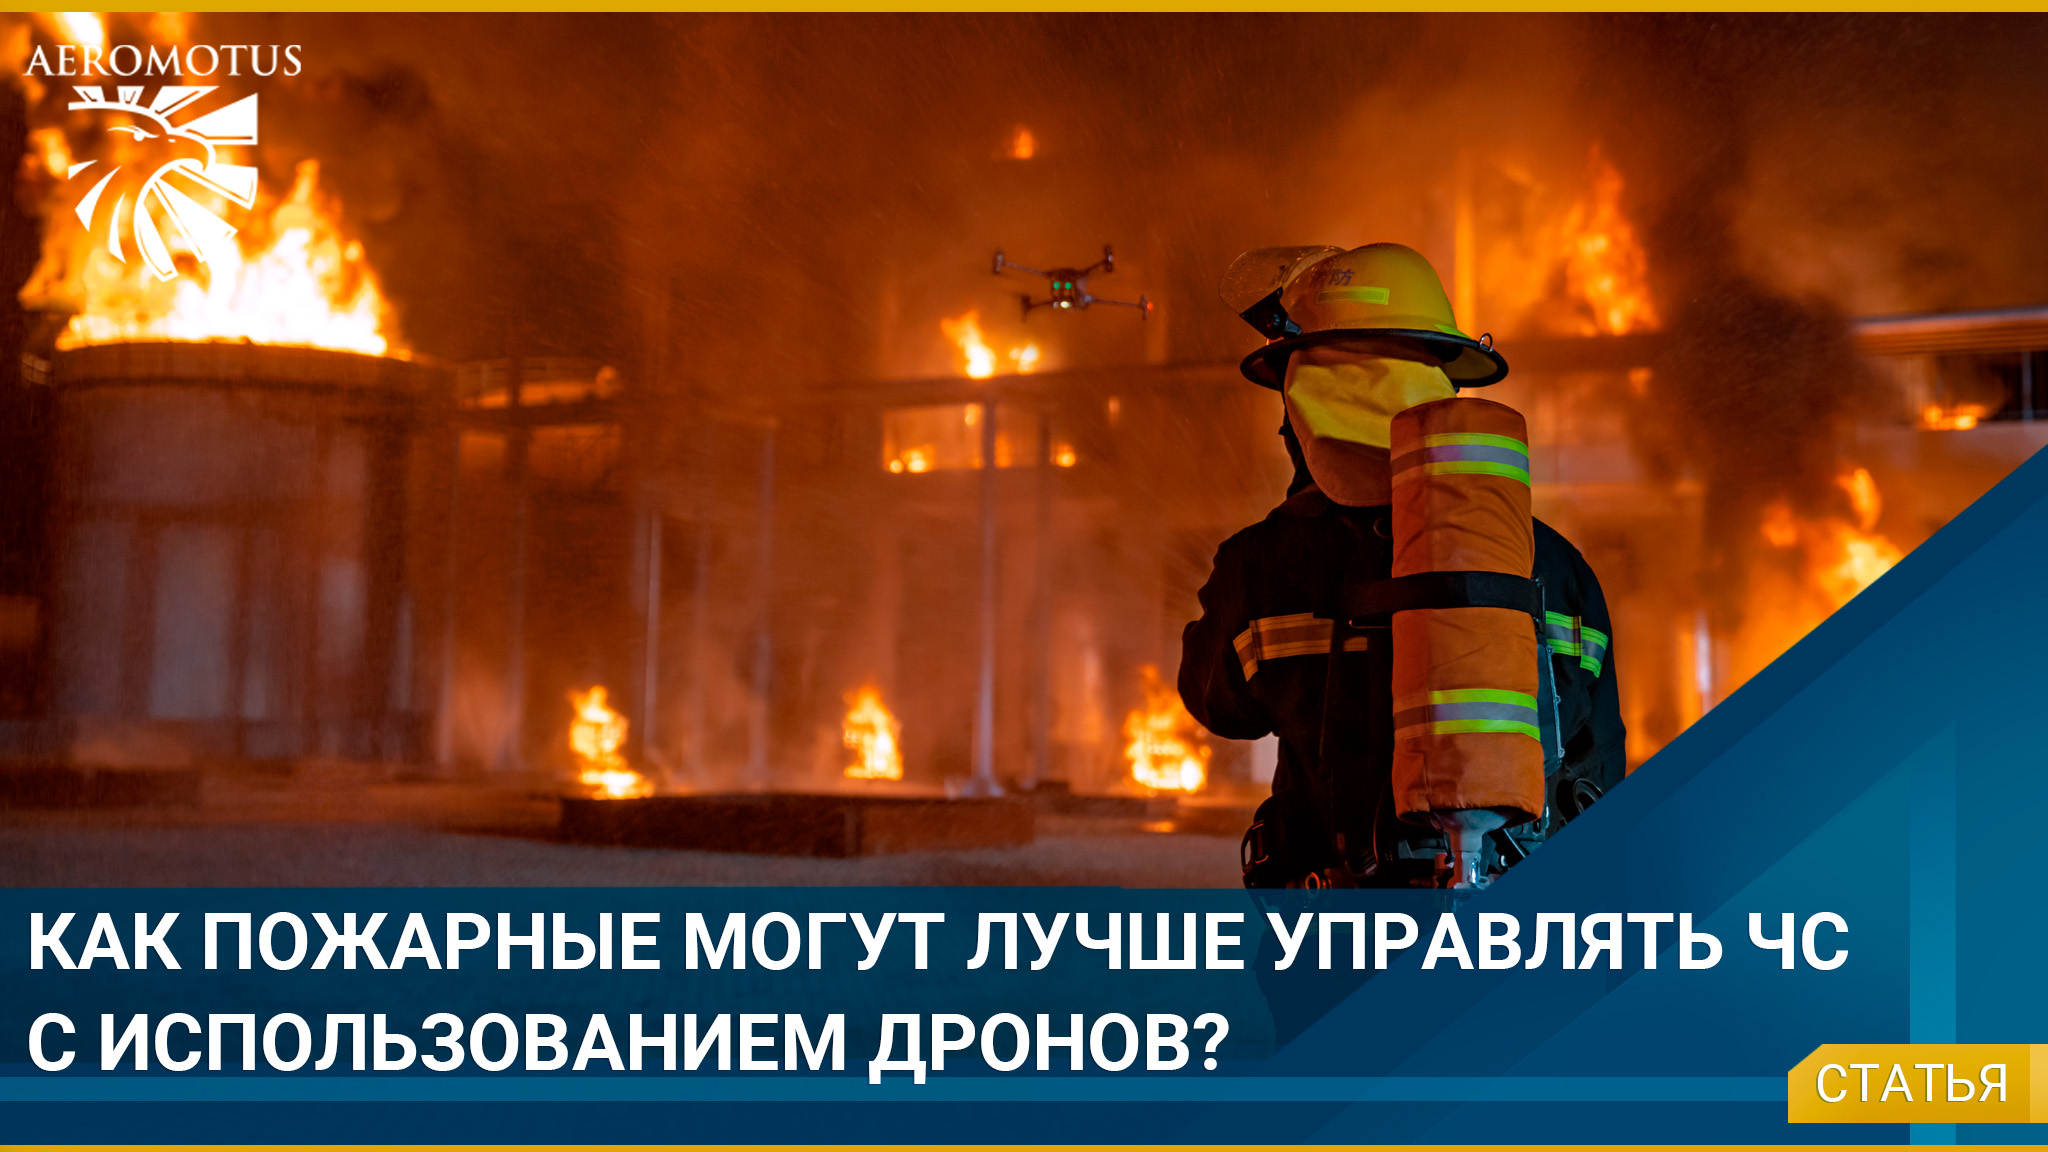 Как пожарные могут лучше управлять чрезвычайными ситуациями с использованием дронов? - Общественная безопасность